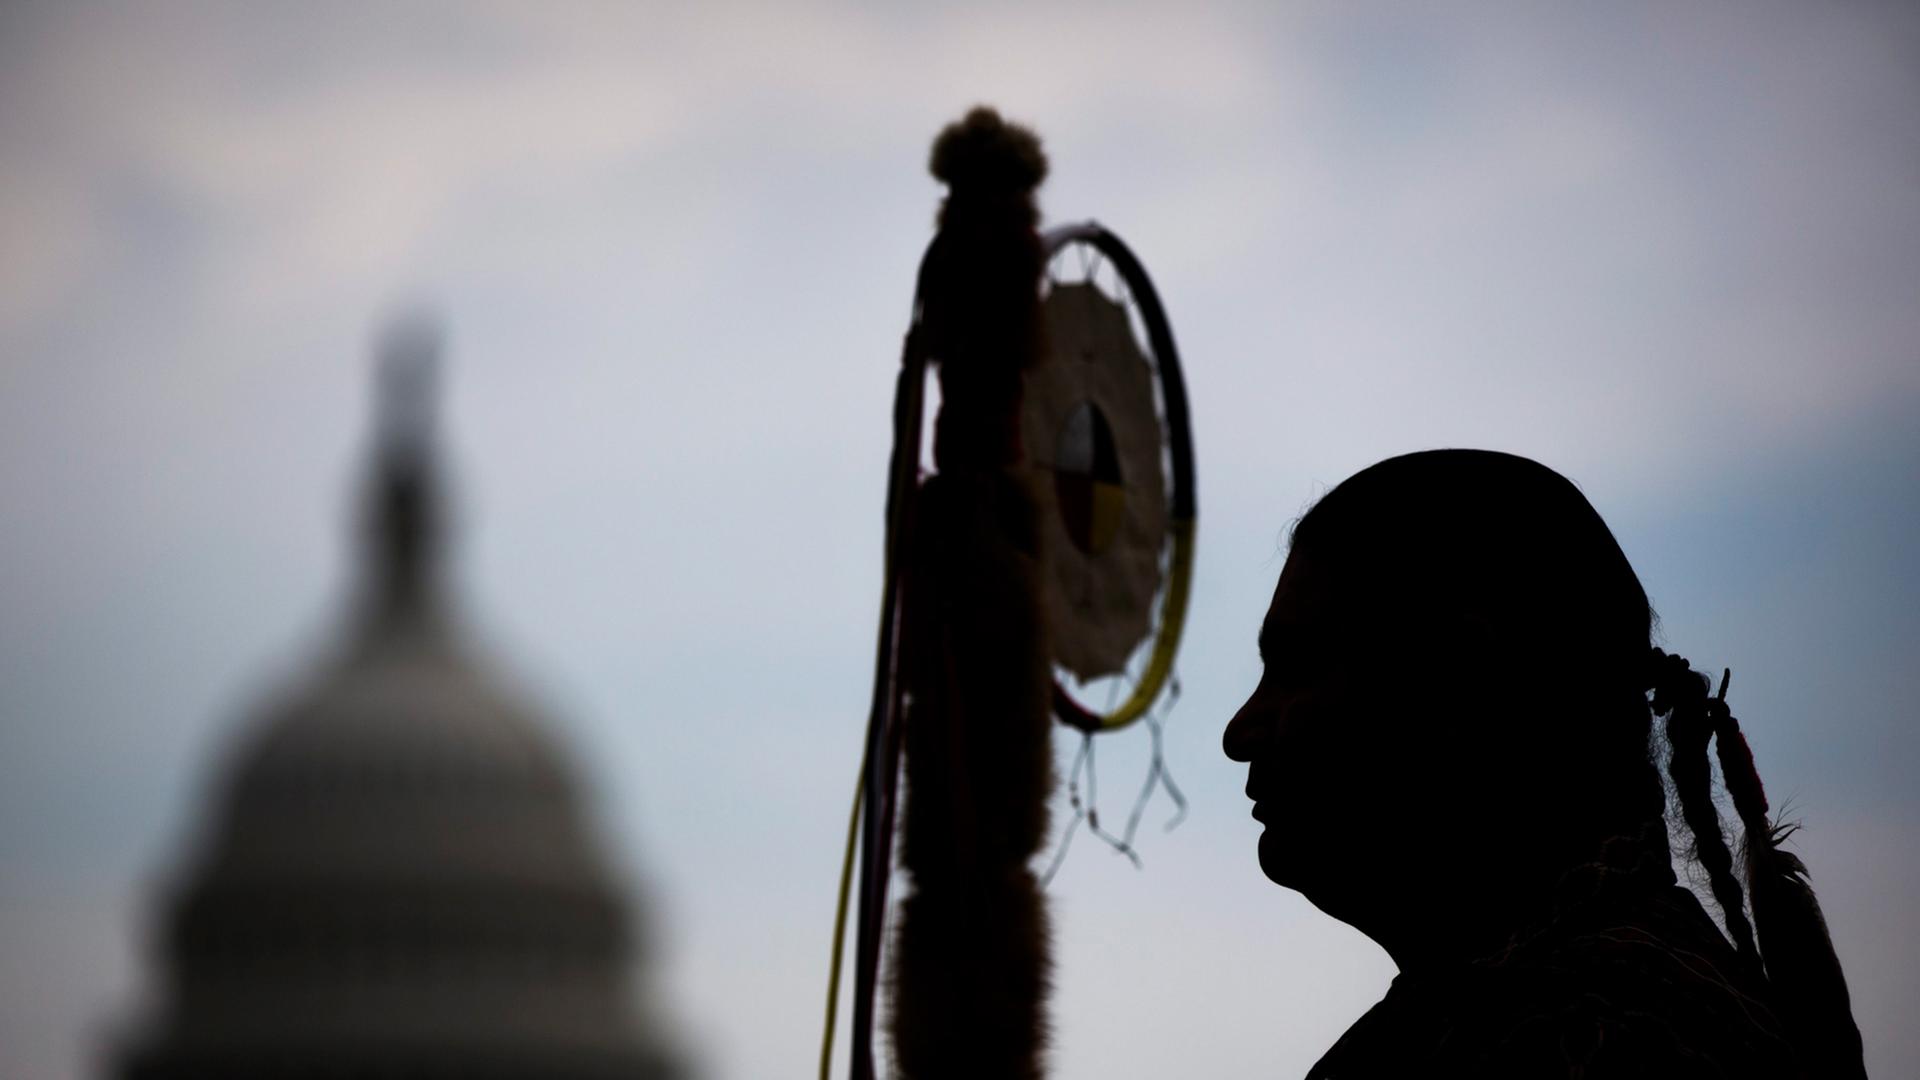 Matthew Black Eagle Man, Mitglied der Dakota Sioux Nation, wartet in Washington, DC, auf die Stammesführer der Cowboy and Indian Alliance, um gemeinsam mit einem Ritt zu Pferde gegen die Keystone XL Pipeline zu deomonstrieren. Im Hintergrund ist die Kuppel des Capitols zu sehen.